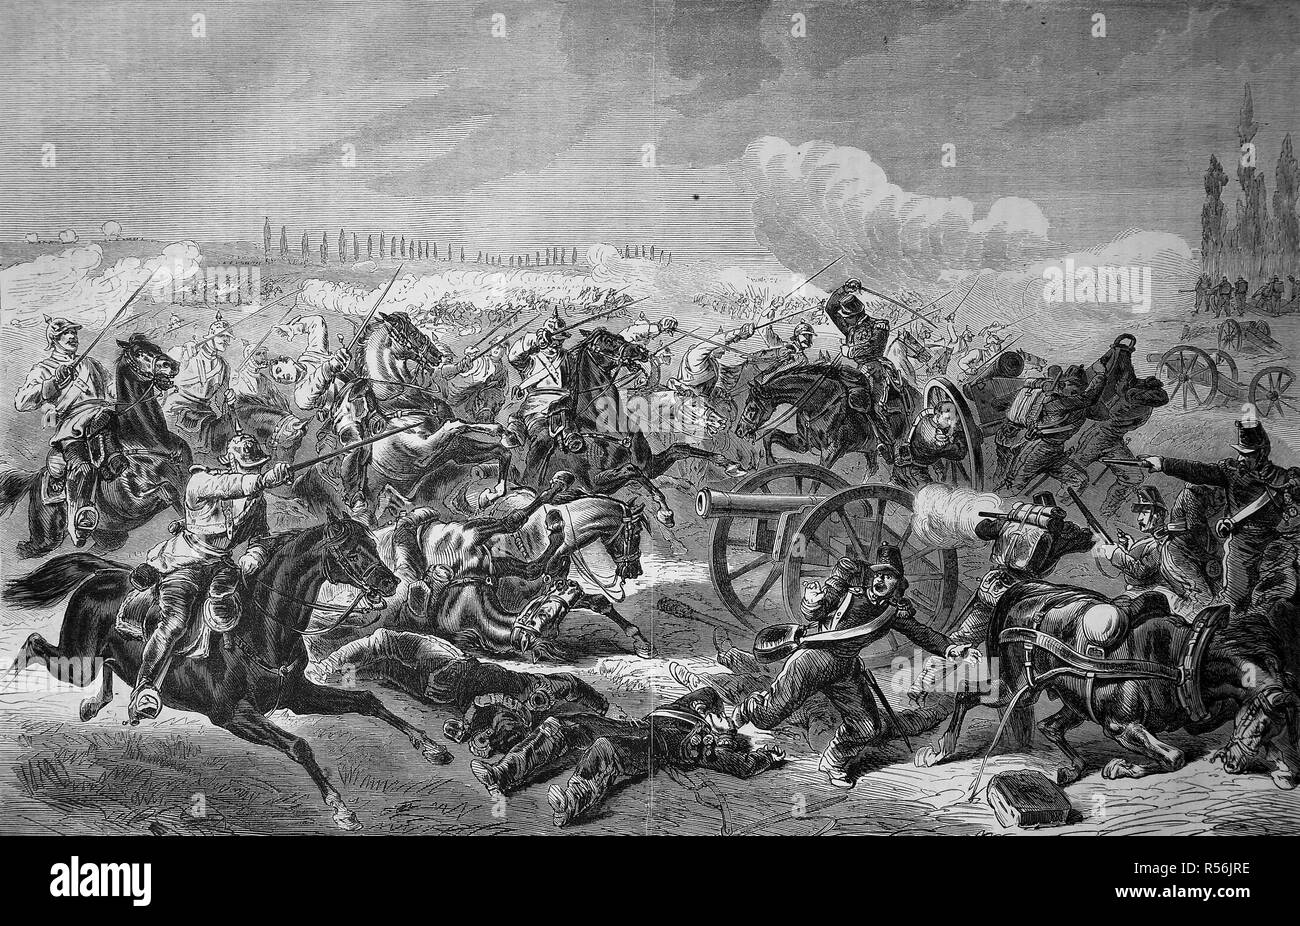 La conquista de una batería de artillería francesa por el 7º Regimiento Cuirassier prusiano en Mars-la-Tour el 16 de agosto Foto de stock